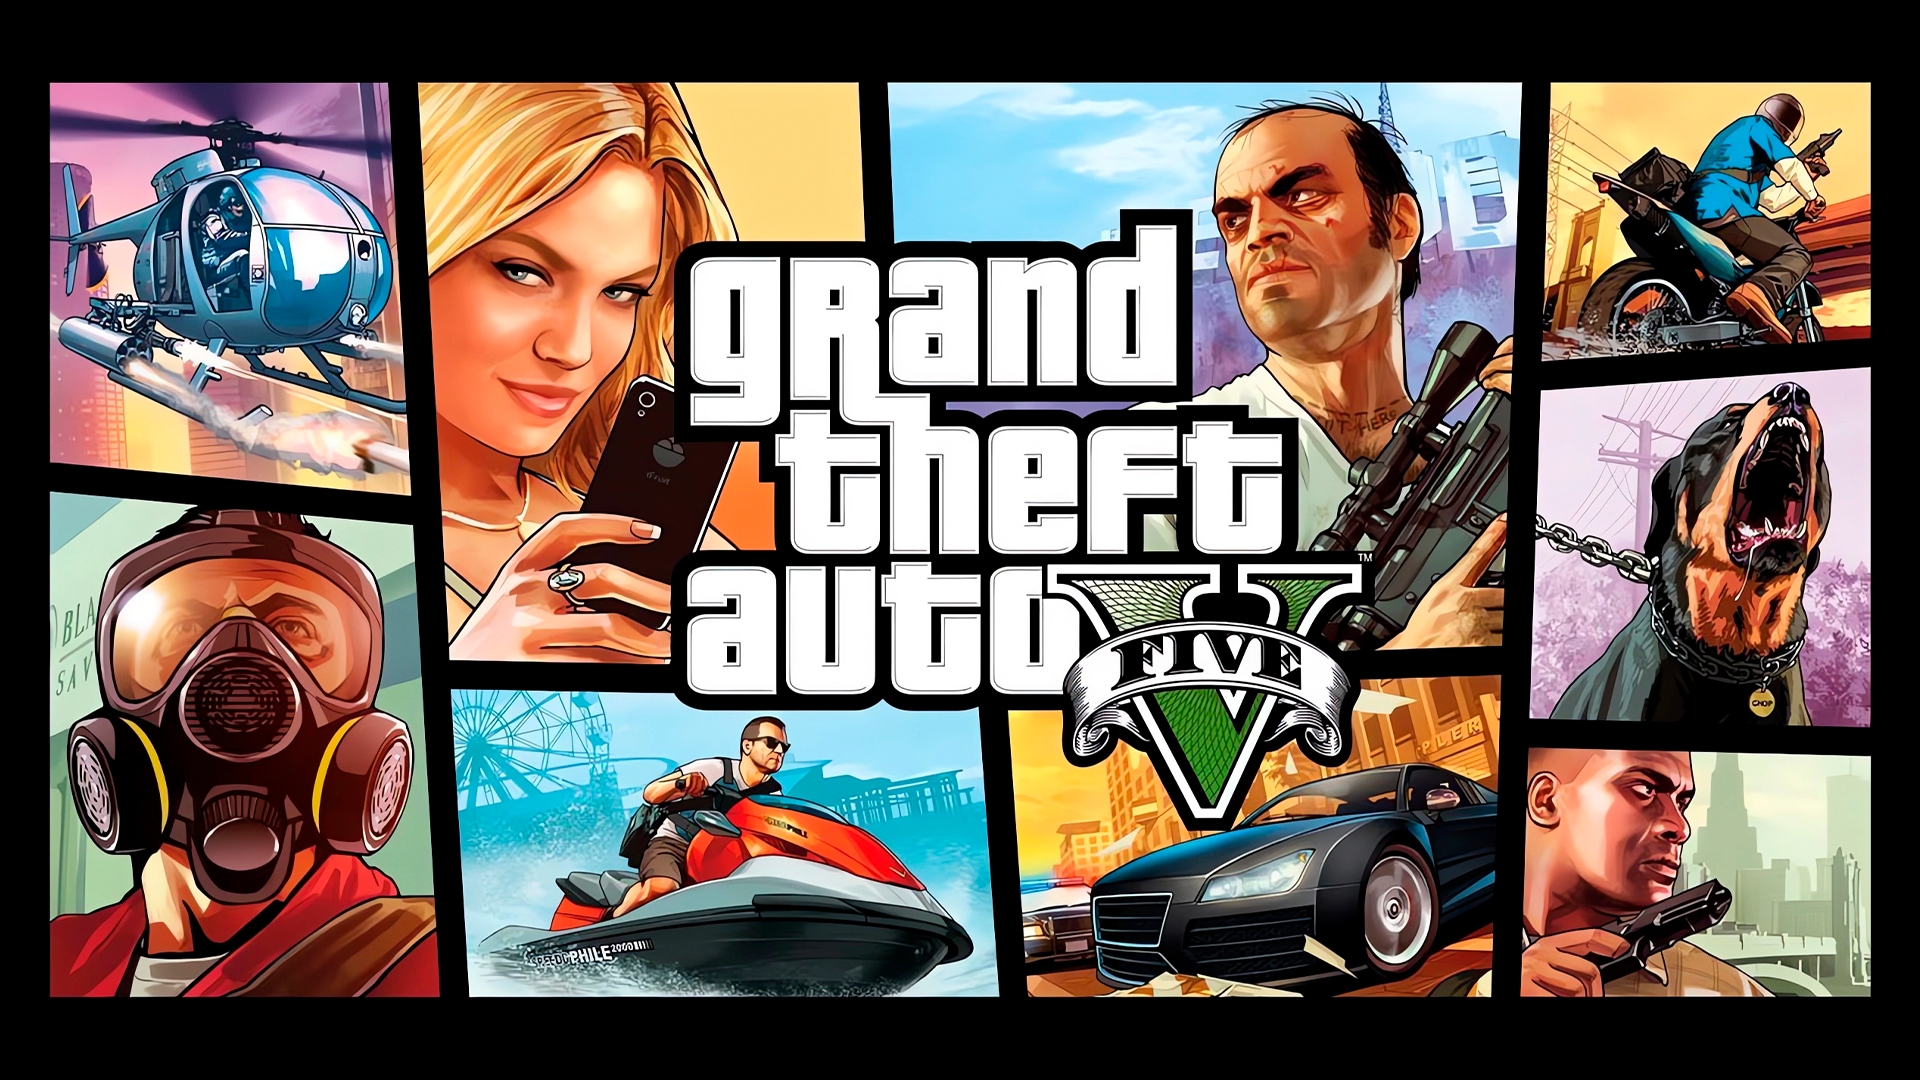 Jogo Grand Theft Auto: The Trilogy - Nintendo Switch no Paraguai